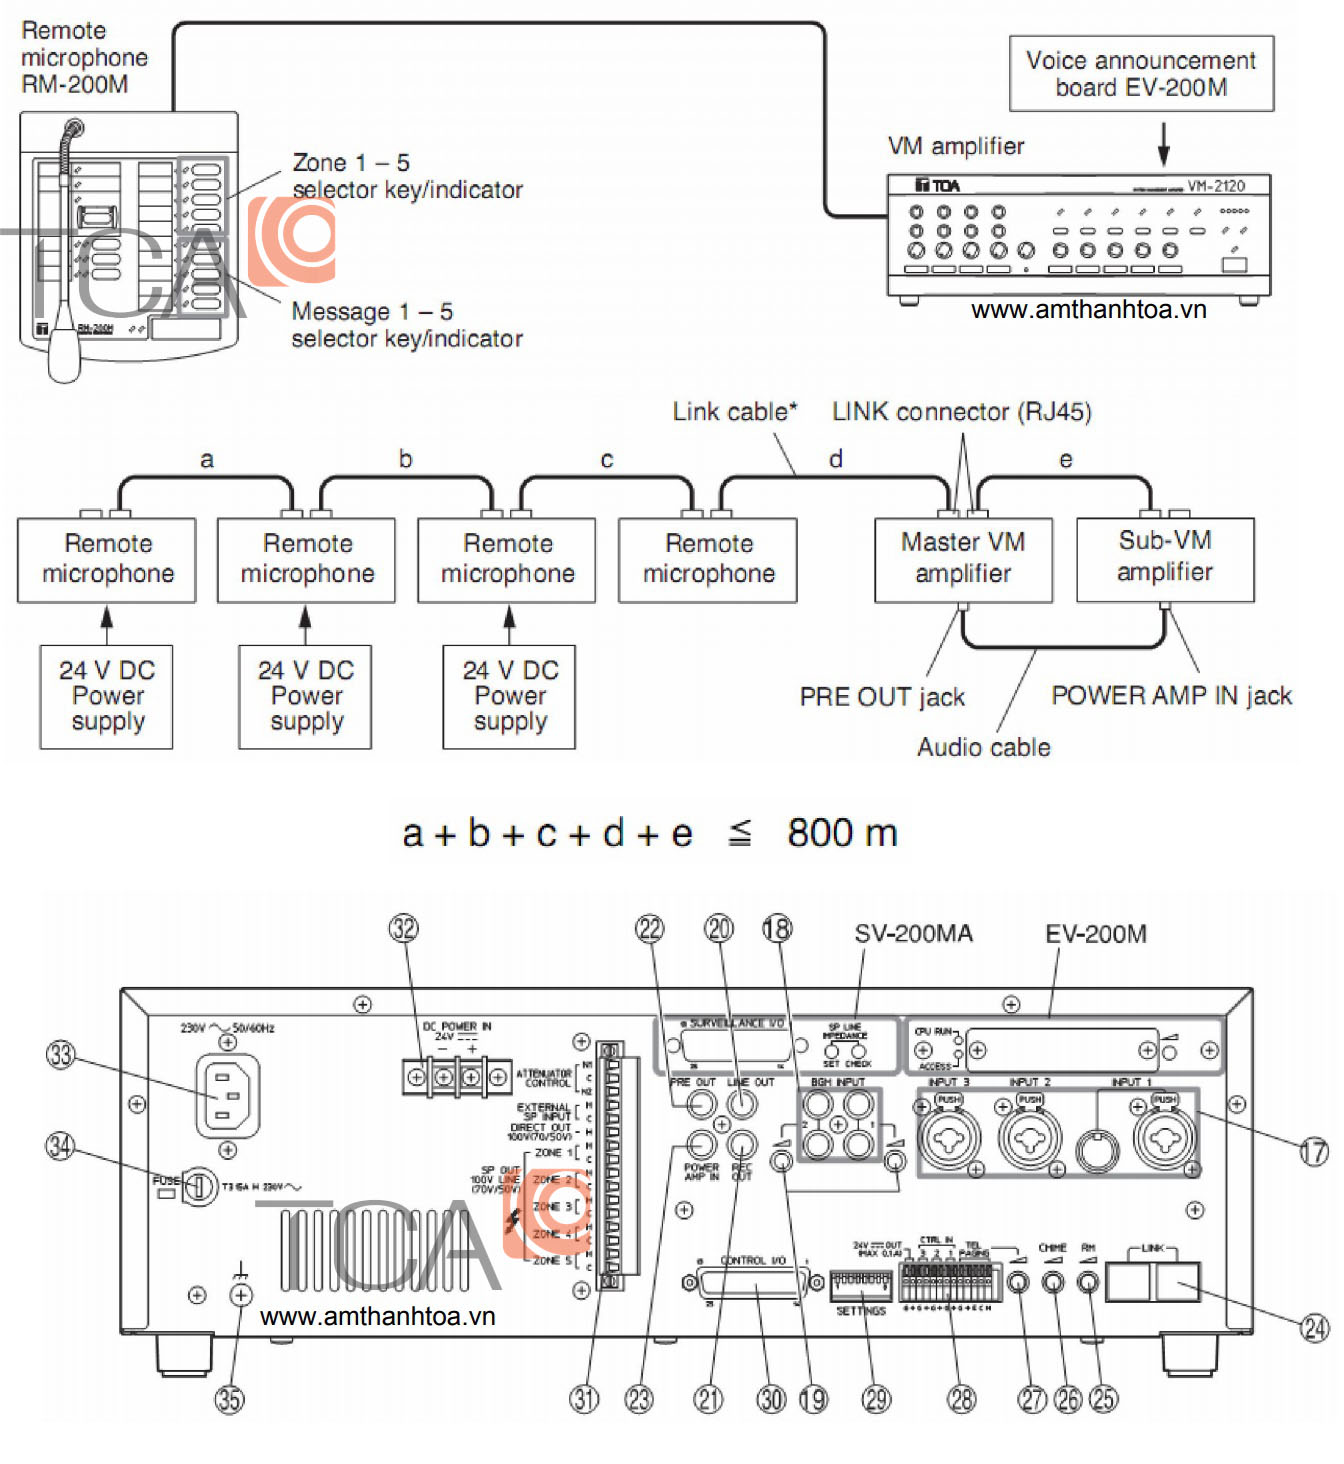 Hướng dẫn sử dụng ampli TOA VM-2120 trong hệ thống di tản VM-2000